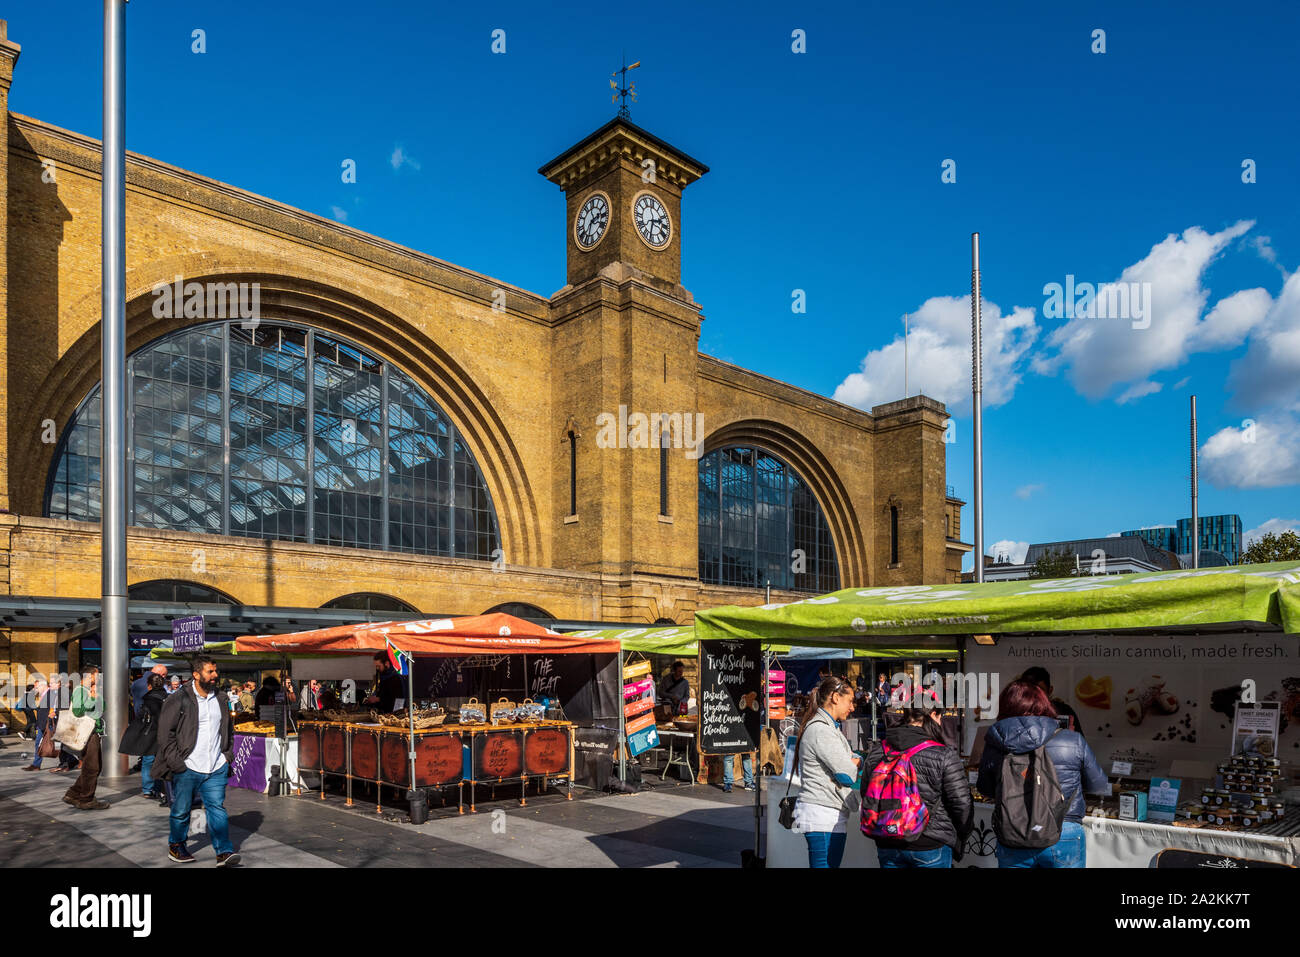 Kings Cross Station London Food Market, frente a la estación Kings Cross de Londres, abrió sus puertas en 1852. Puestos de comida en la plaza de la estación. Foto de stock